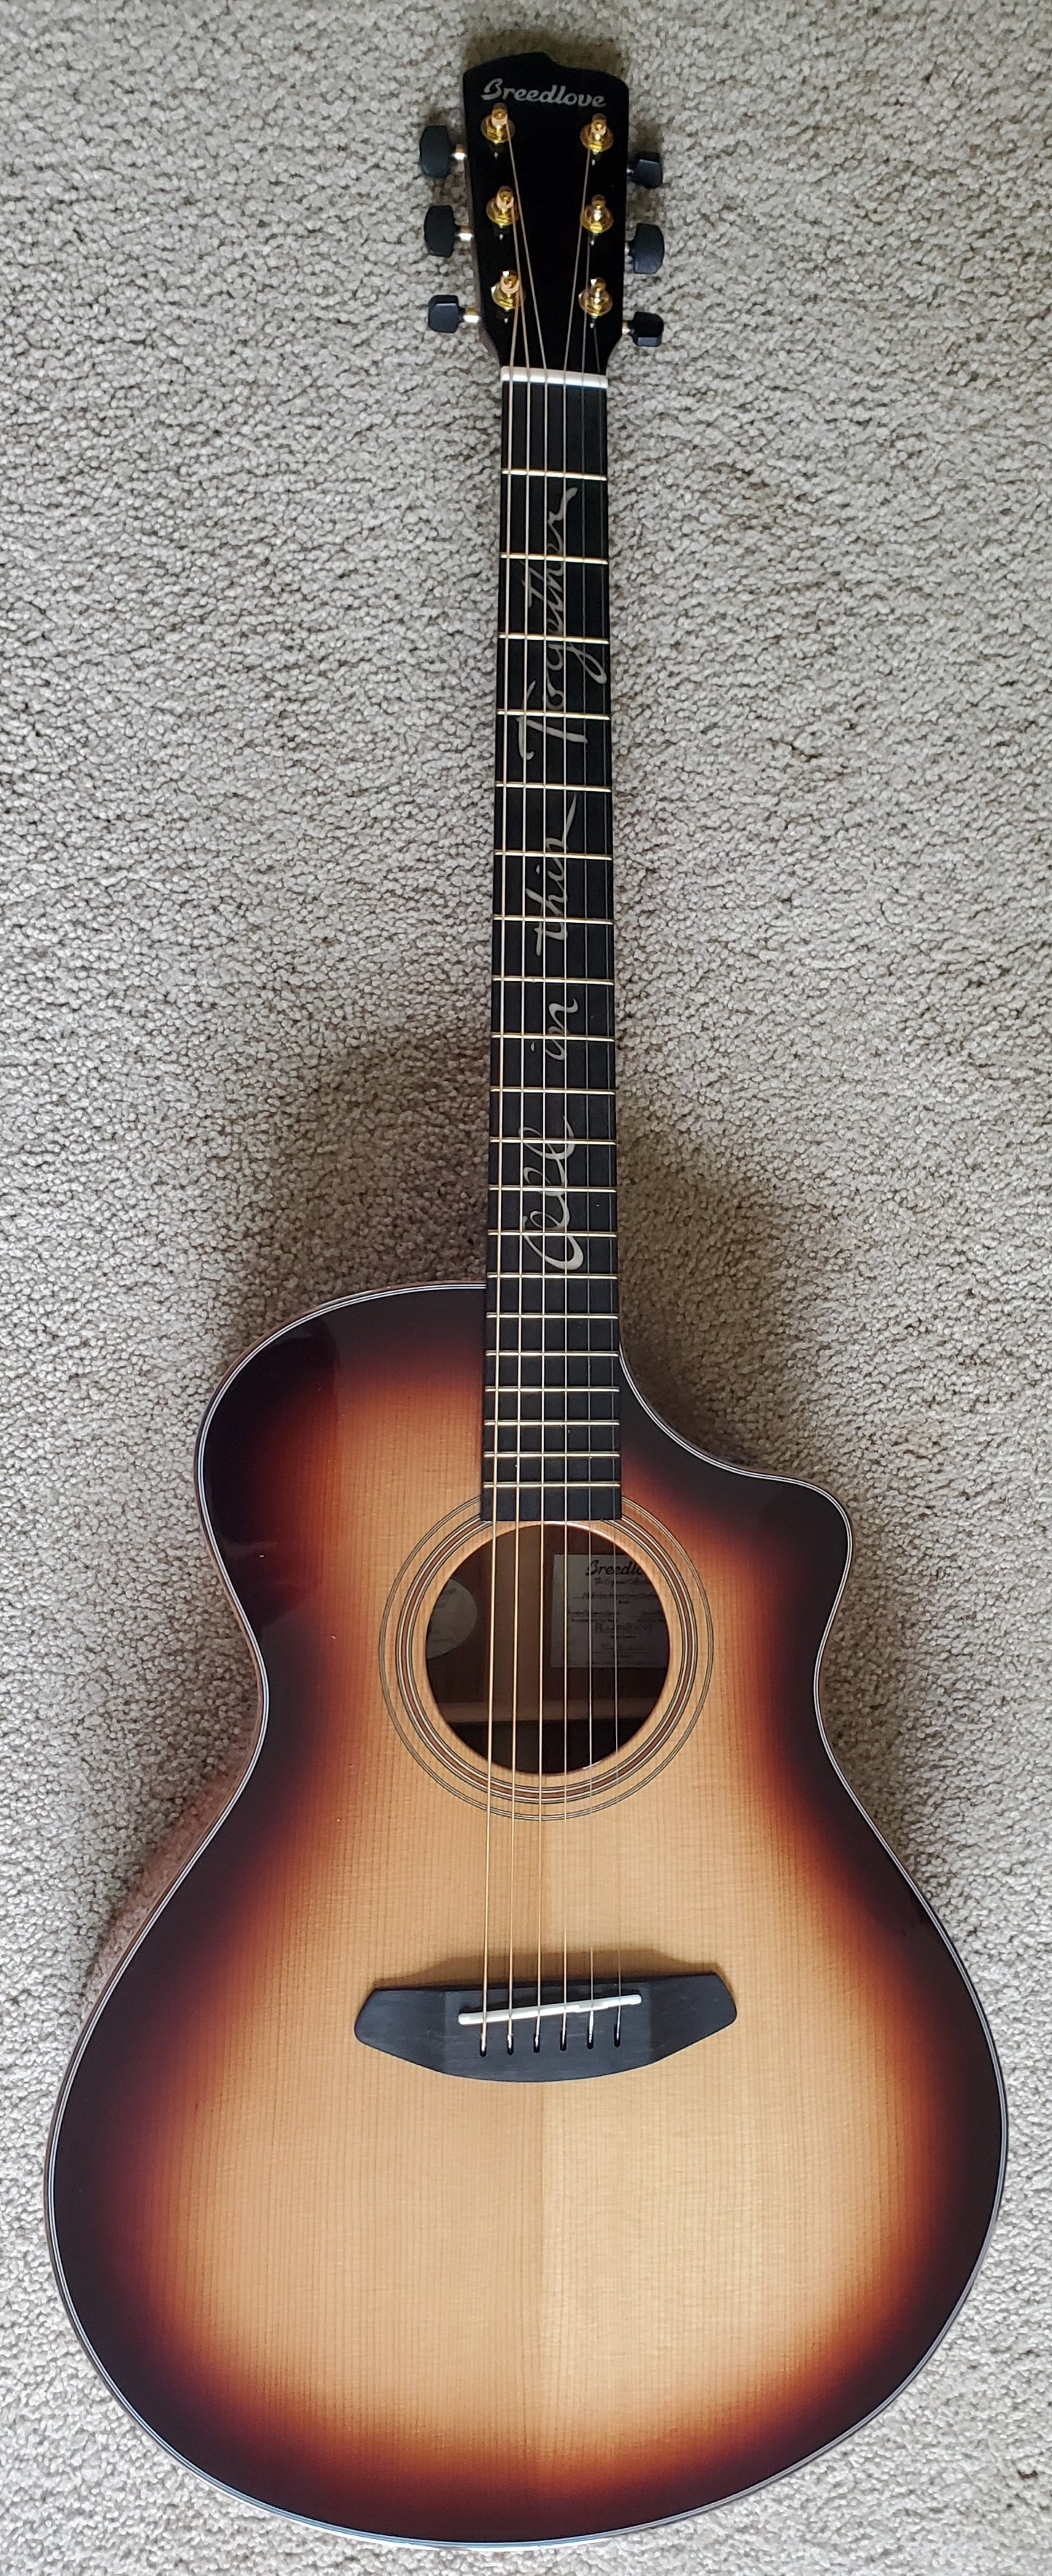 Breedlove Jeff Bridges Amazon Concert Sunburst CE Acoustic Electric Guitar, New Taylor Case